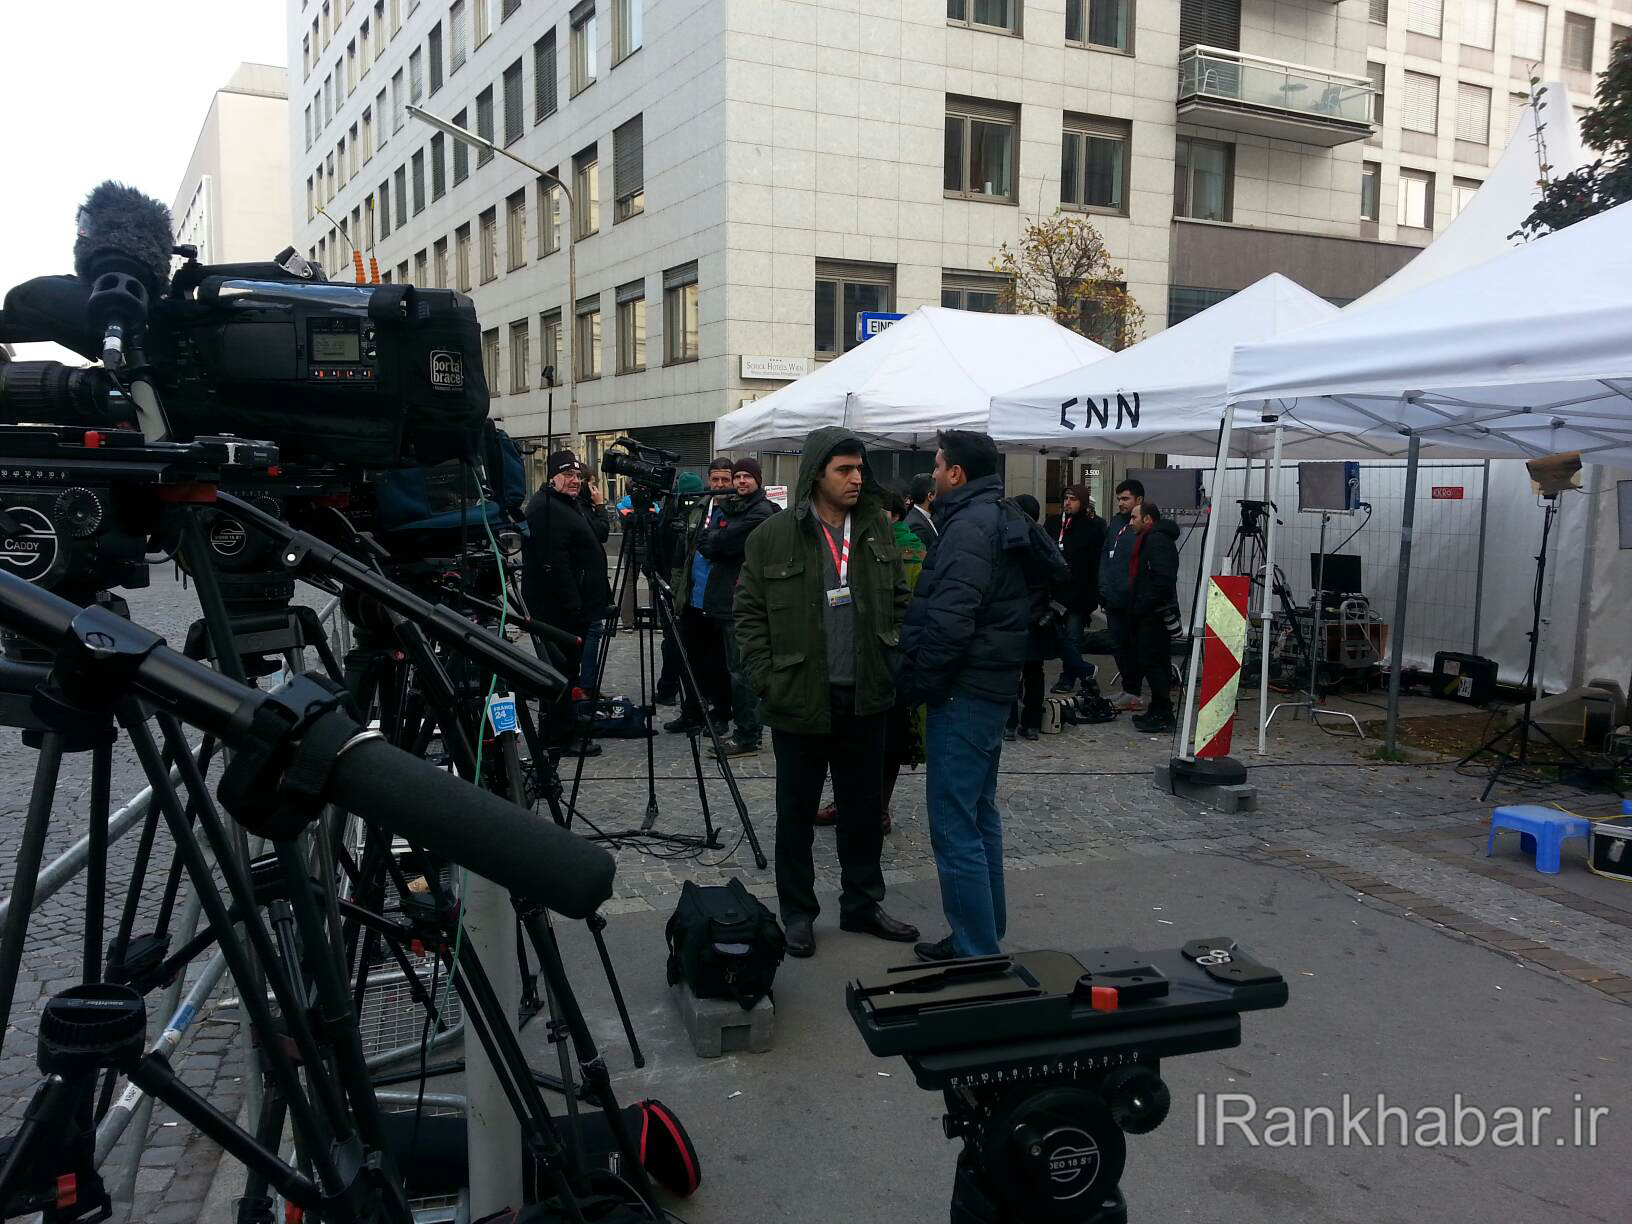 انتظار خبرنگاران مقابل هتل محل برگزاری مذاکرات هسته ای